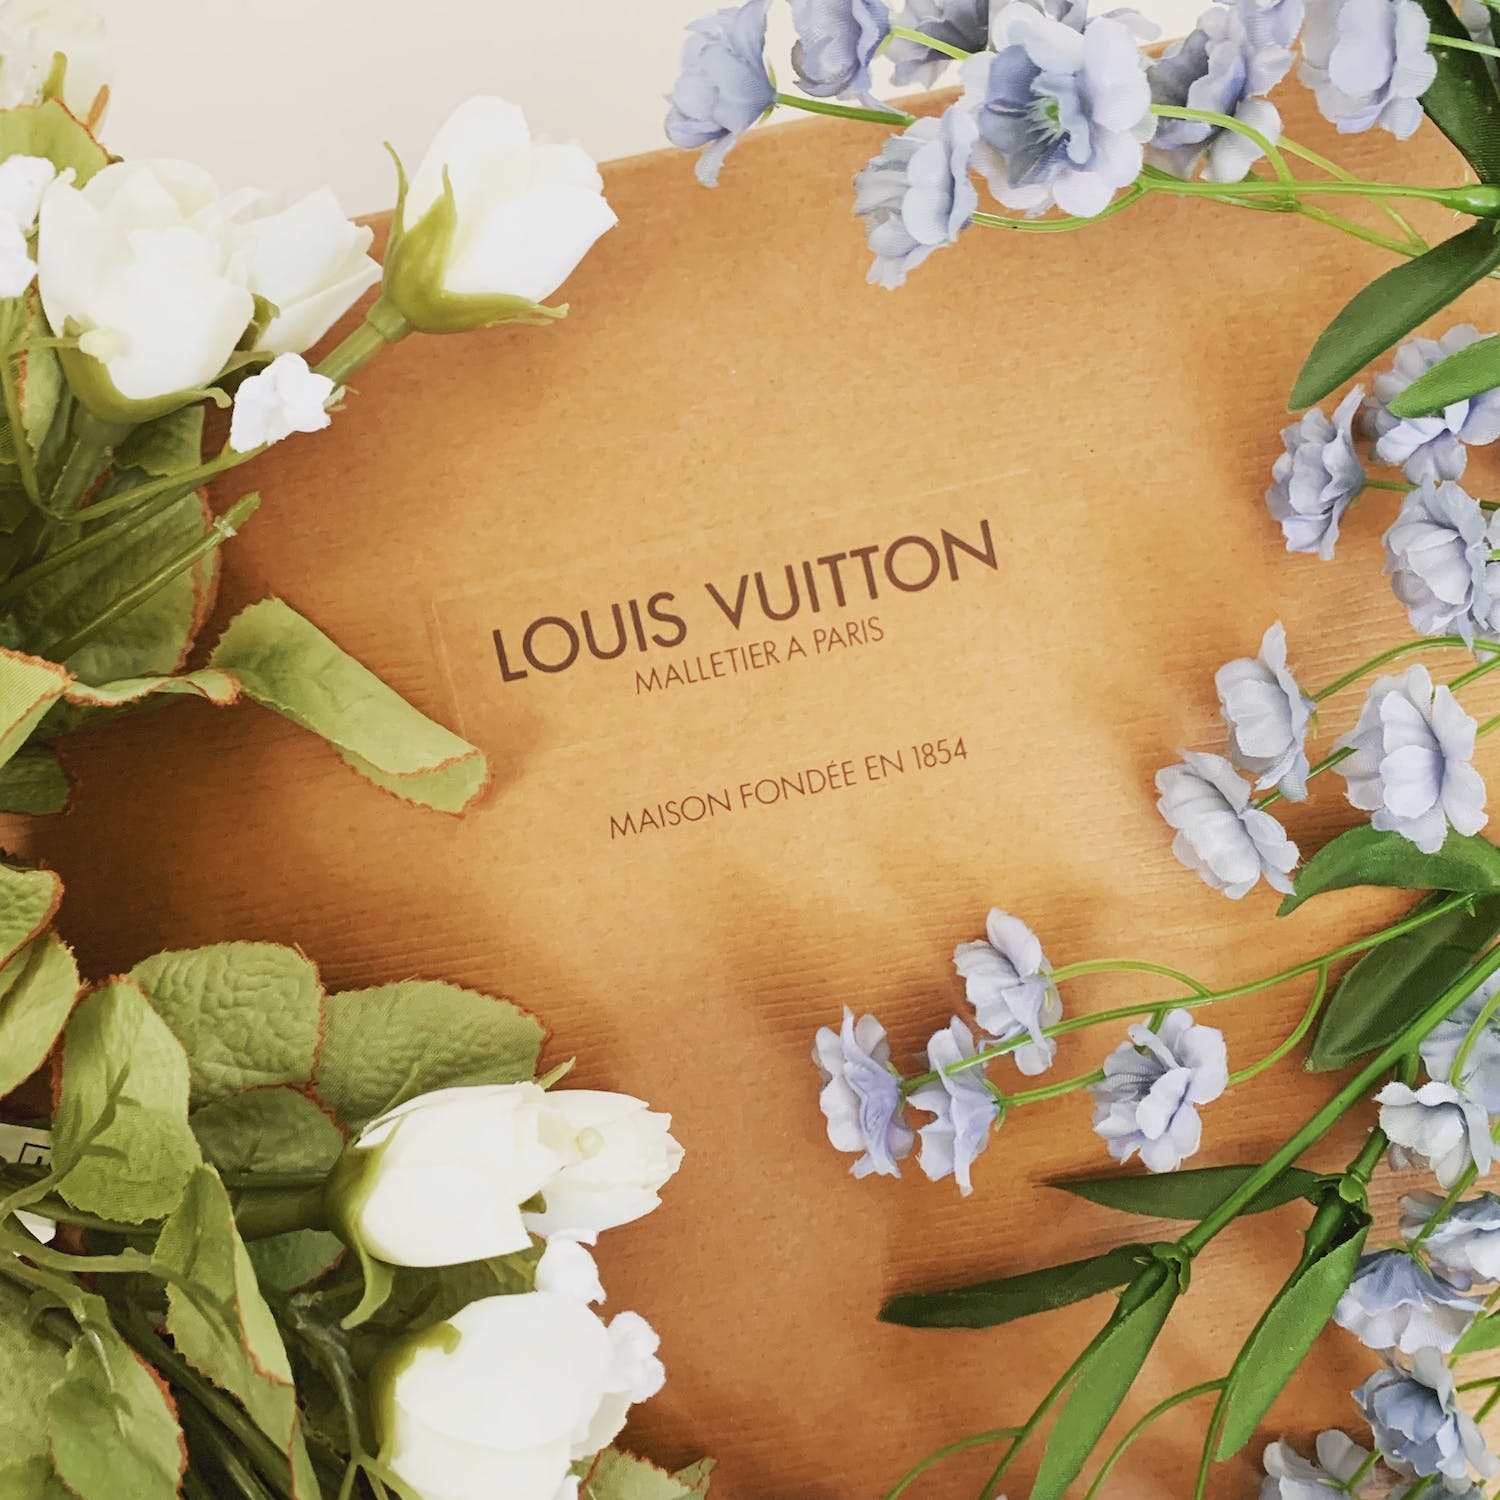 Louis Vuitton gift box Malletier A Paris Maison Fondee En 1854